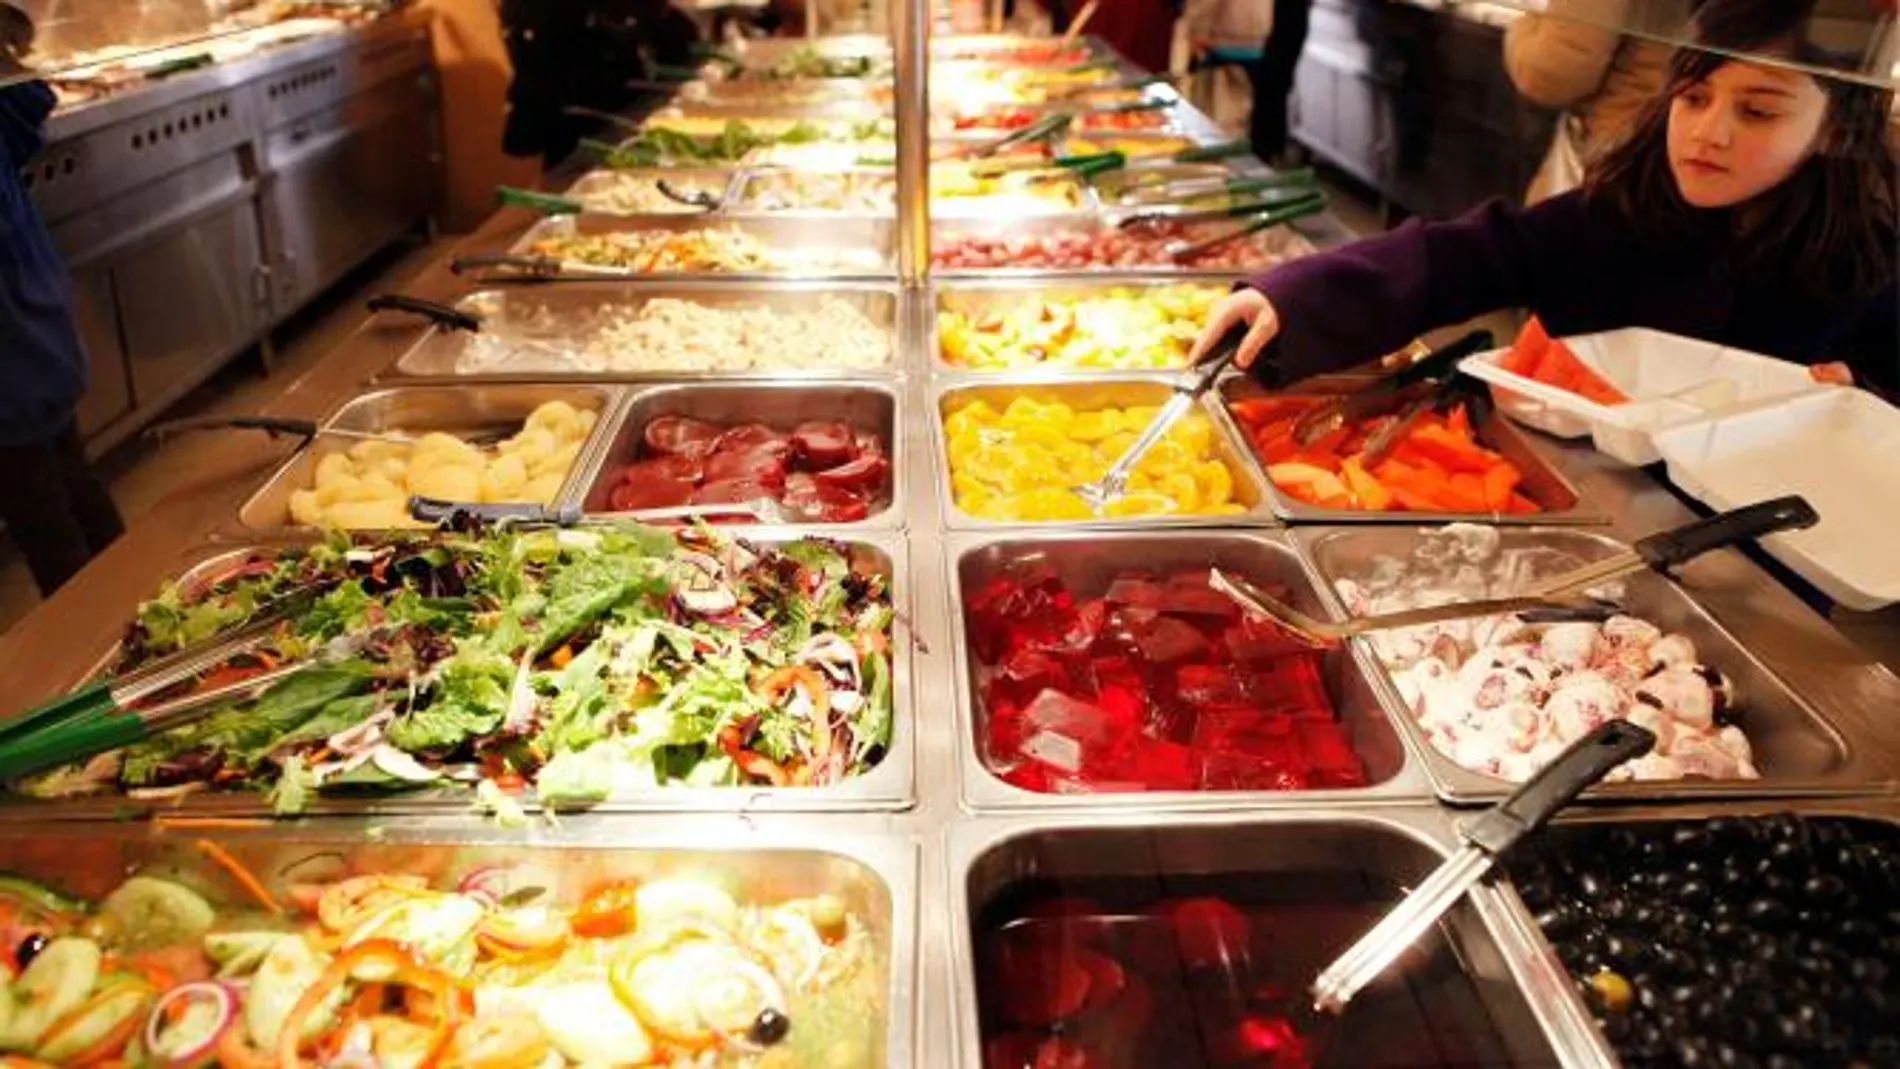 Expulsado un hombre de un buffet libre por “comer demasiado”: “¡Esto es  discriminación!”